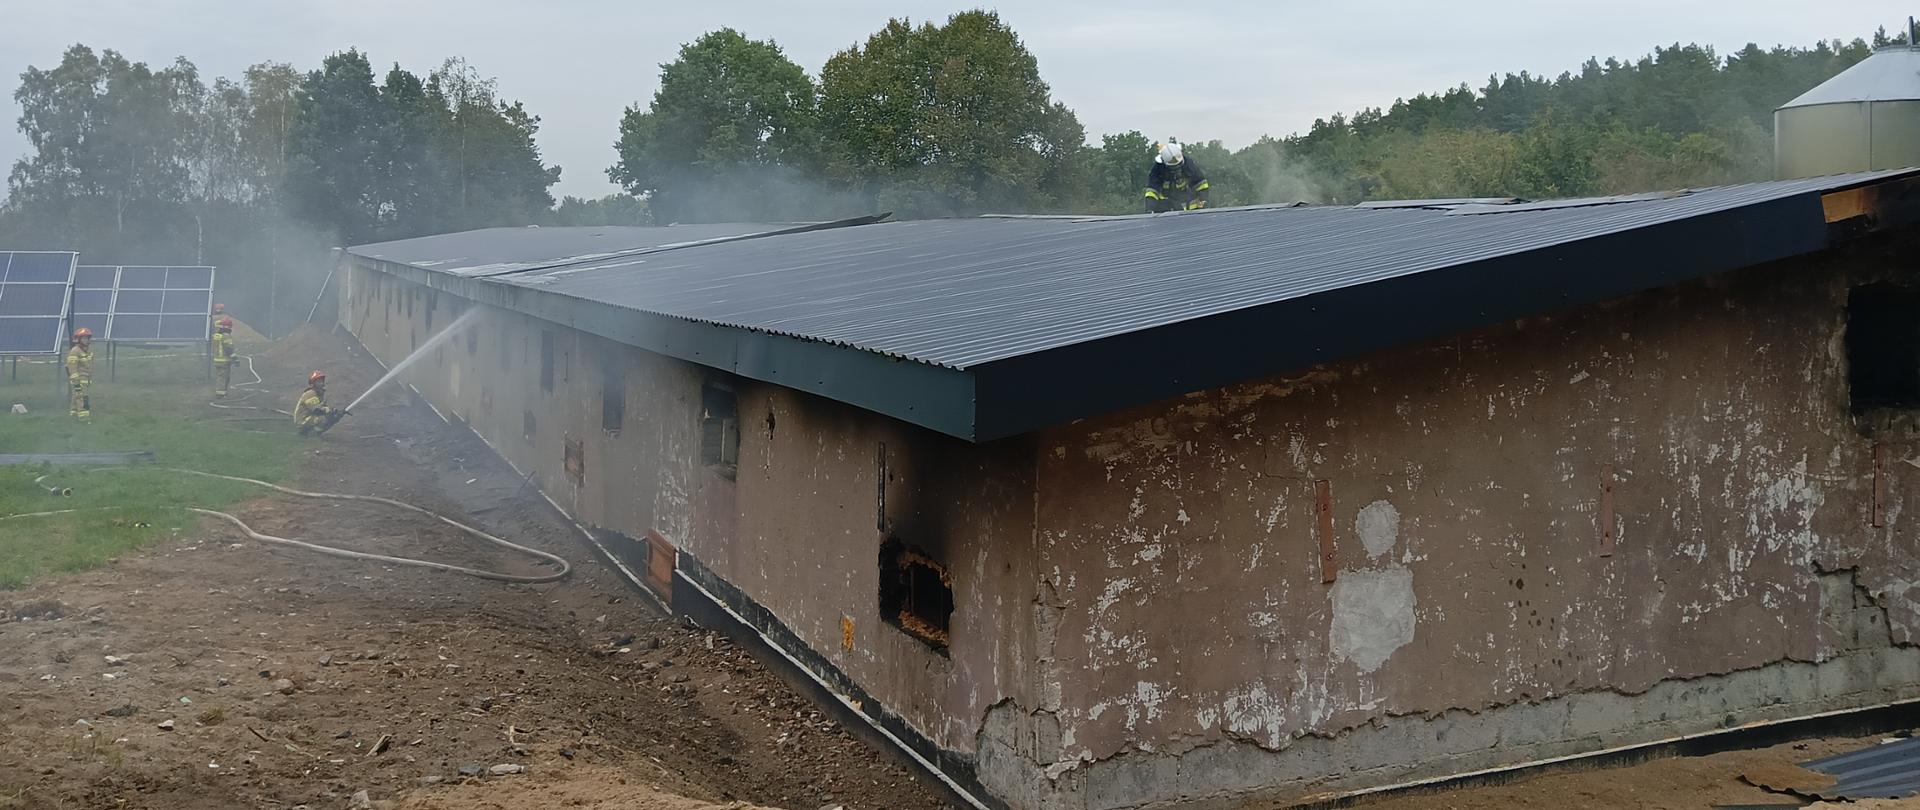 Z budynku inwentarskiego wydobywa się dym, po lewej stronie zdjęcia widać strażaków podających wodę na budynek, na dachu pracuje jeden strażak.